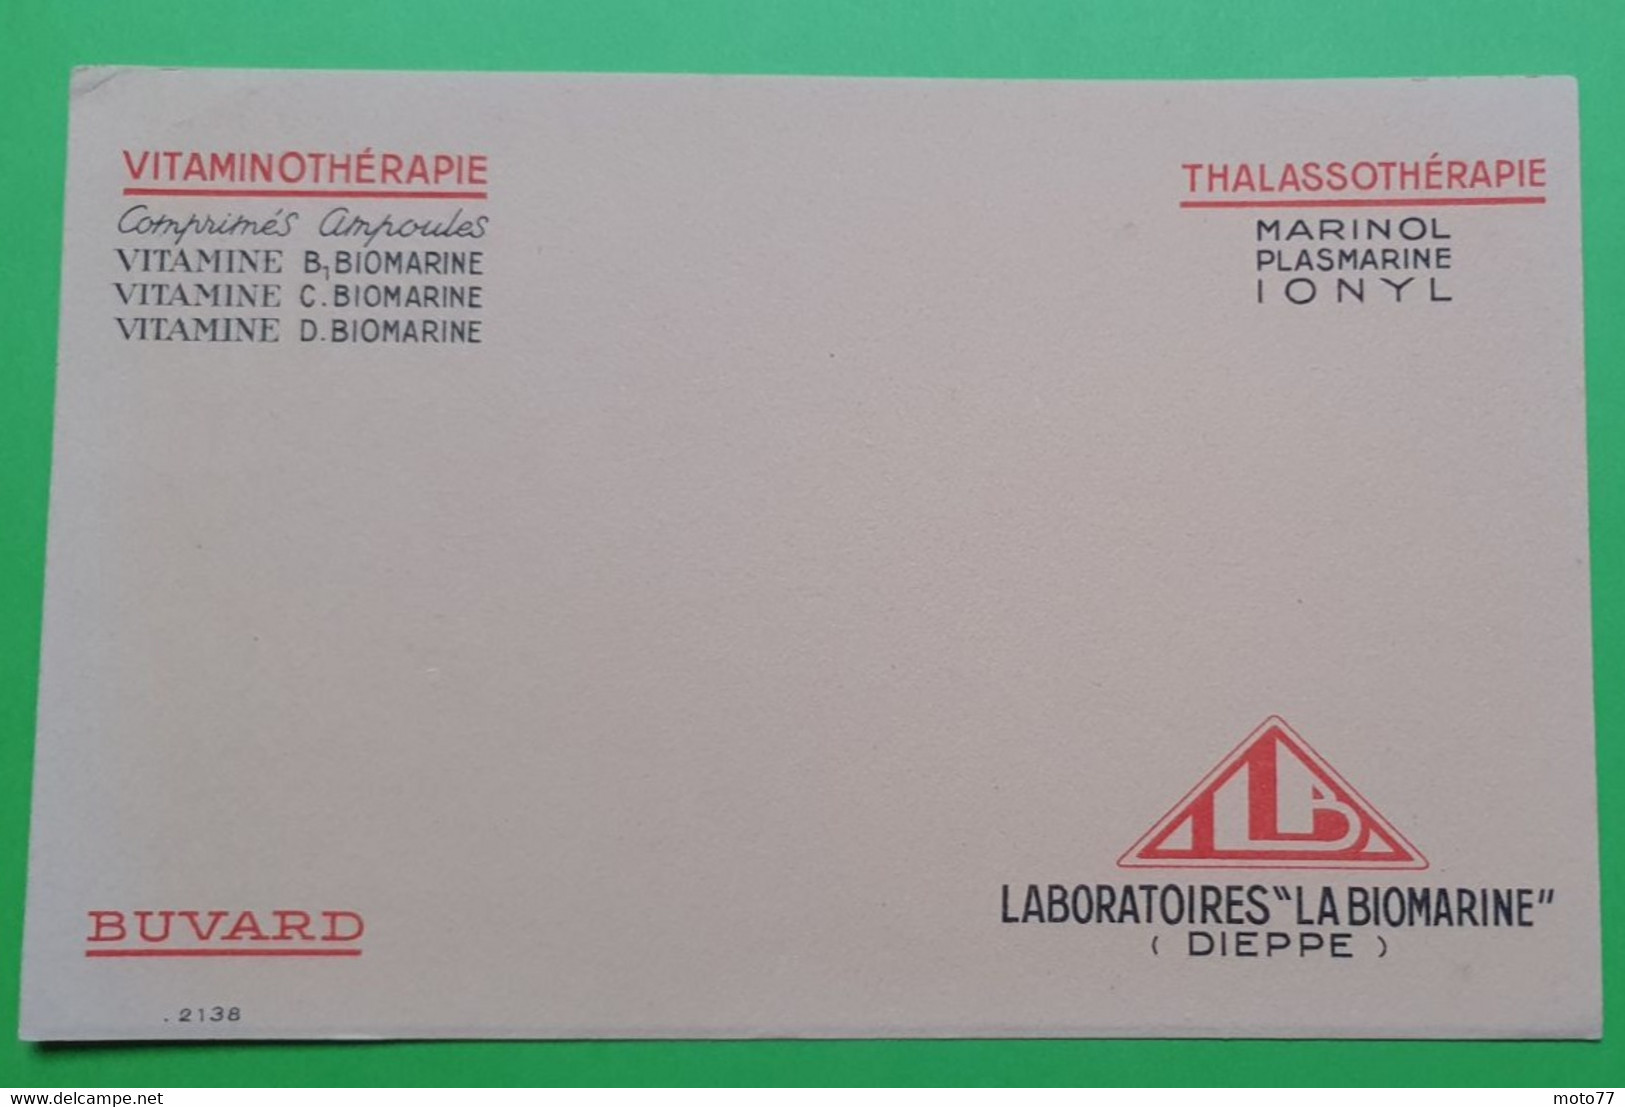 Buvard 1106 - Laboratoire LA BIOMARINE - VITAMINOTHERAPIE - Etat D'usage: Voir Photos - 18 X 12 Cm Environ - Années 1950 - Produits Pharmaceutiques